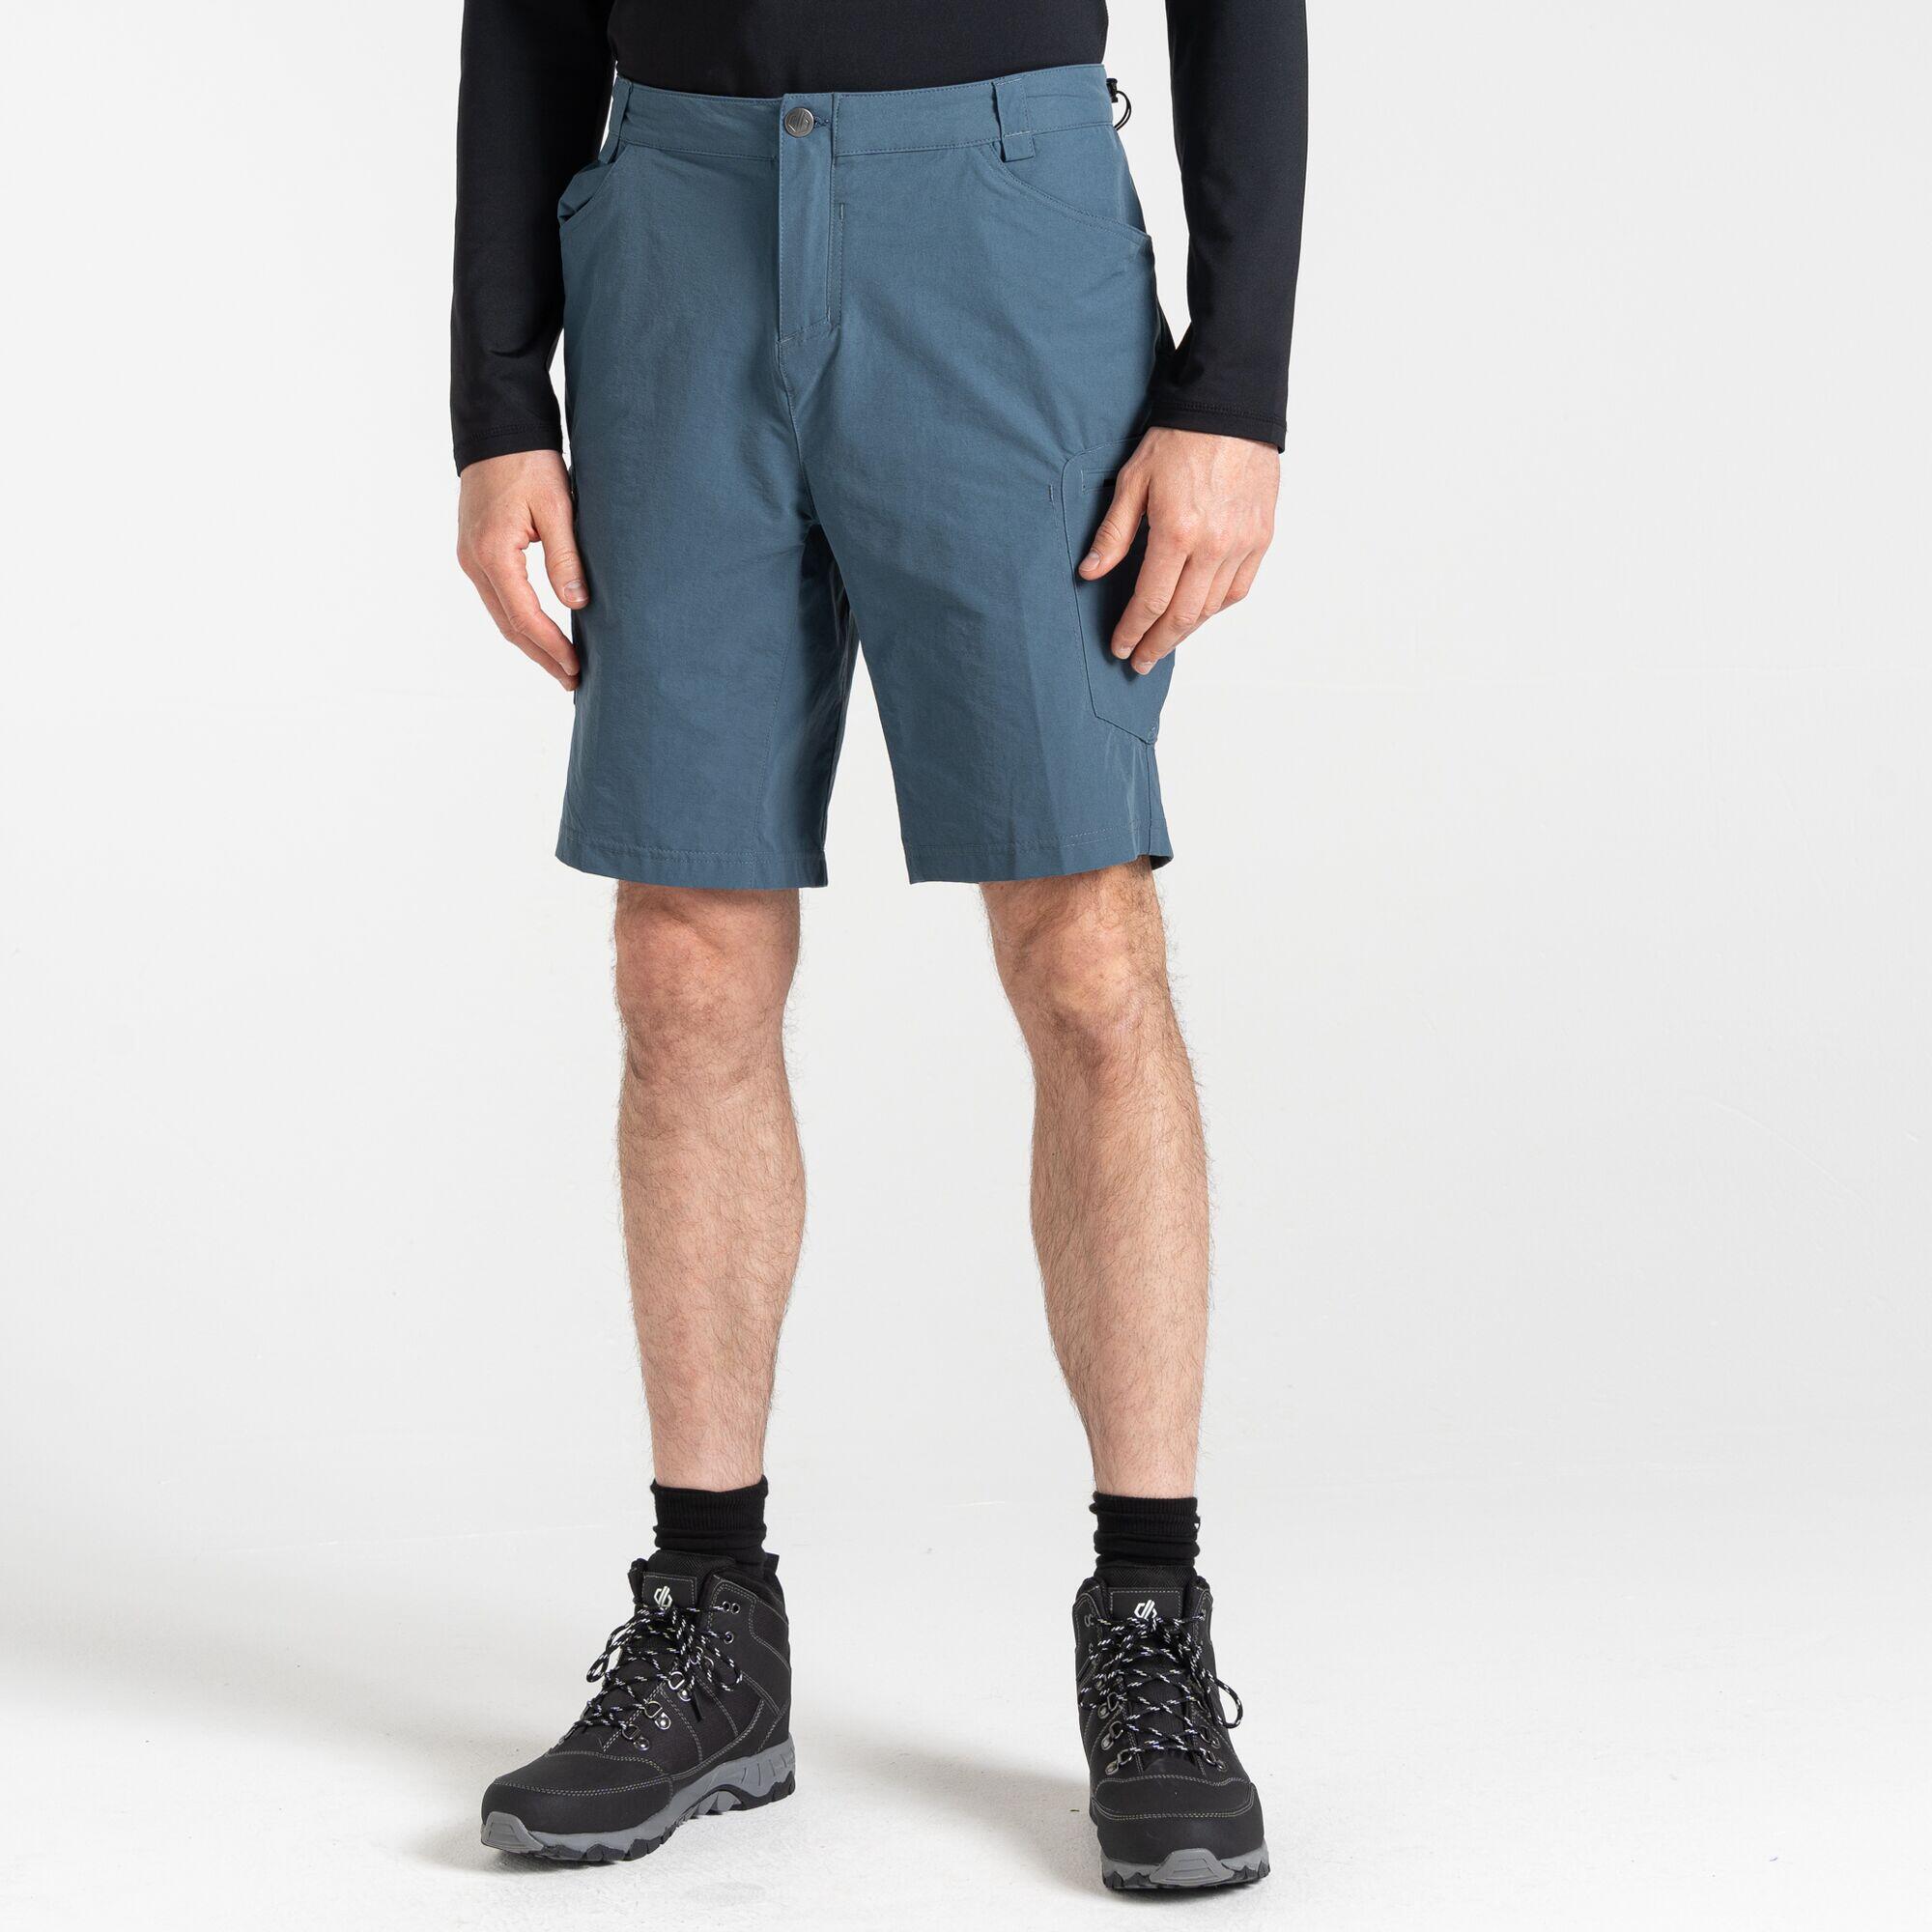 Tuned In II  Men's Walking  Shorts - Blue Orion Grey 2/7